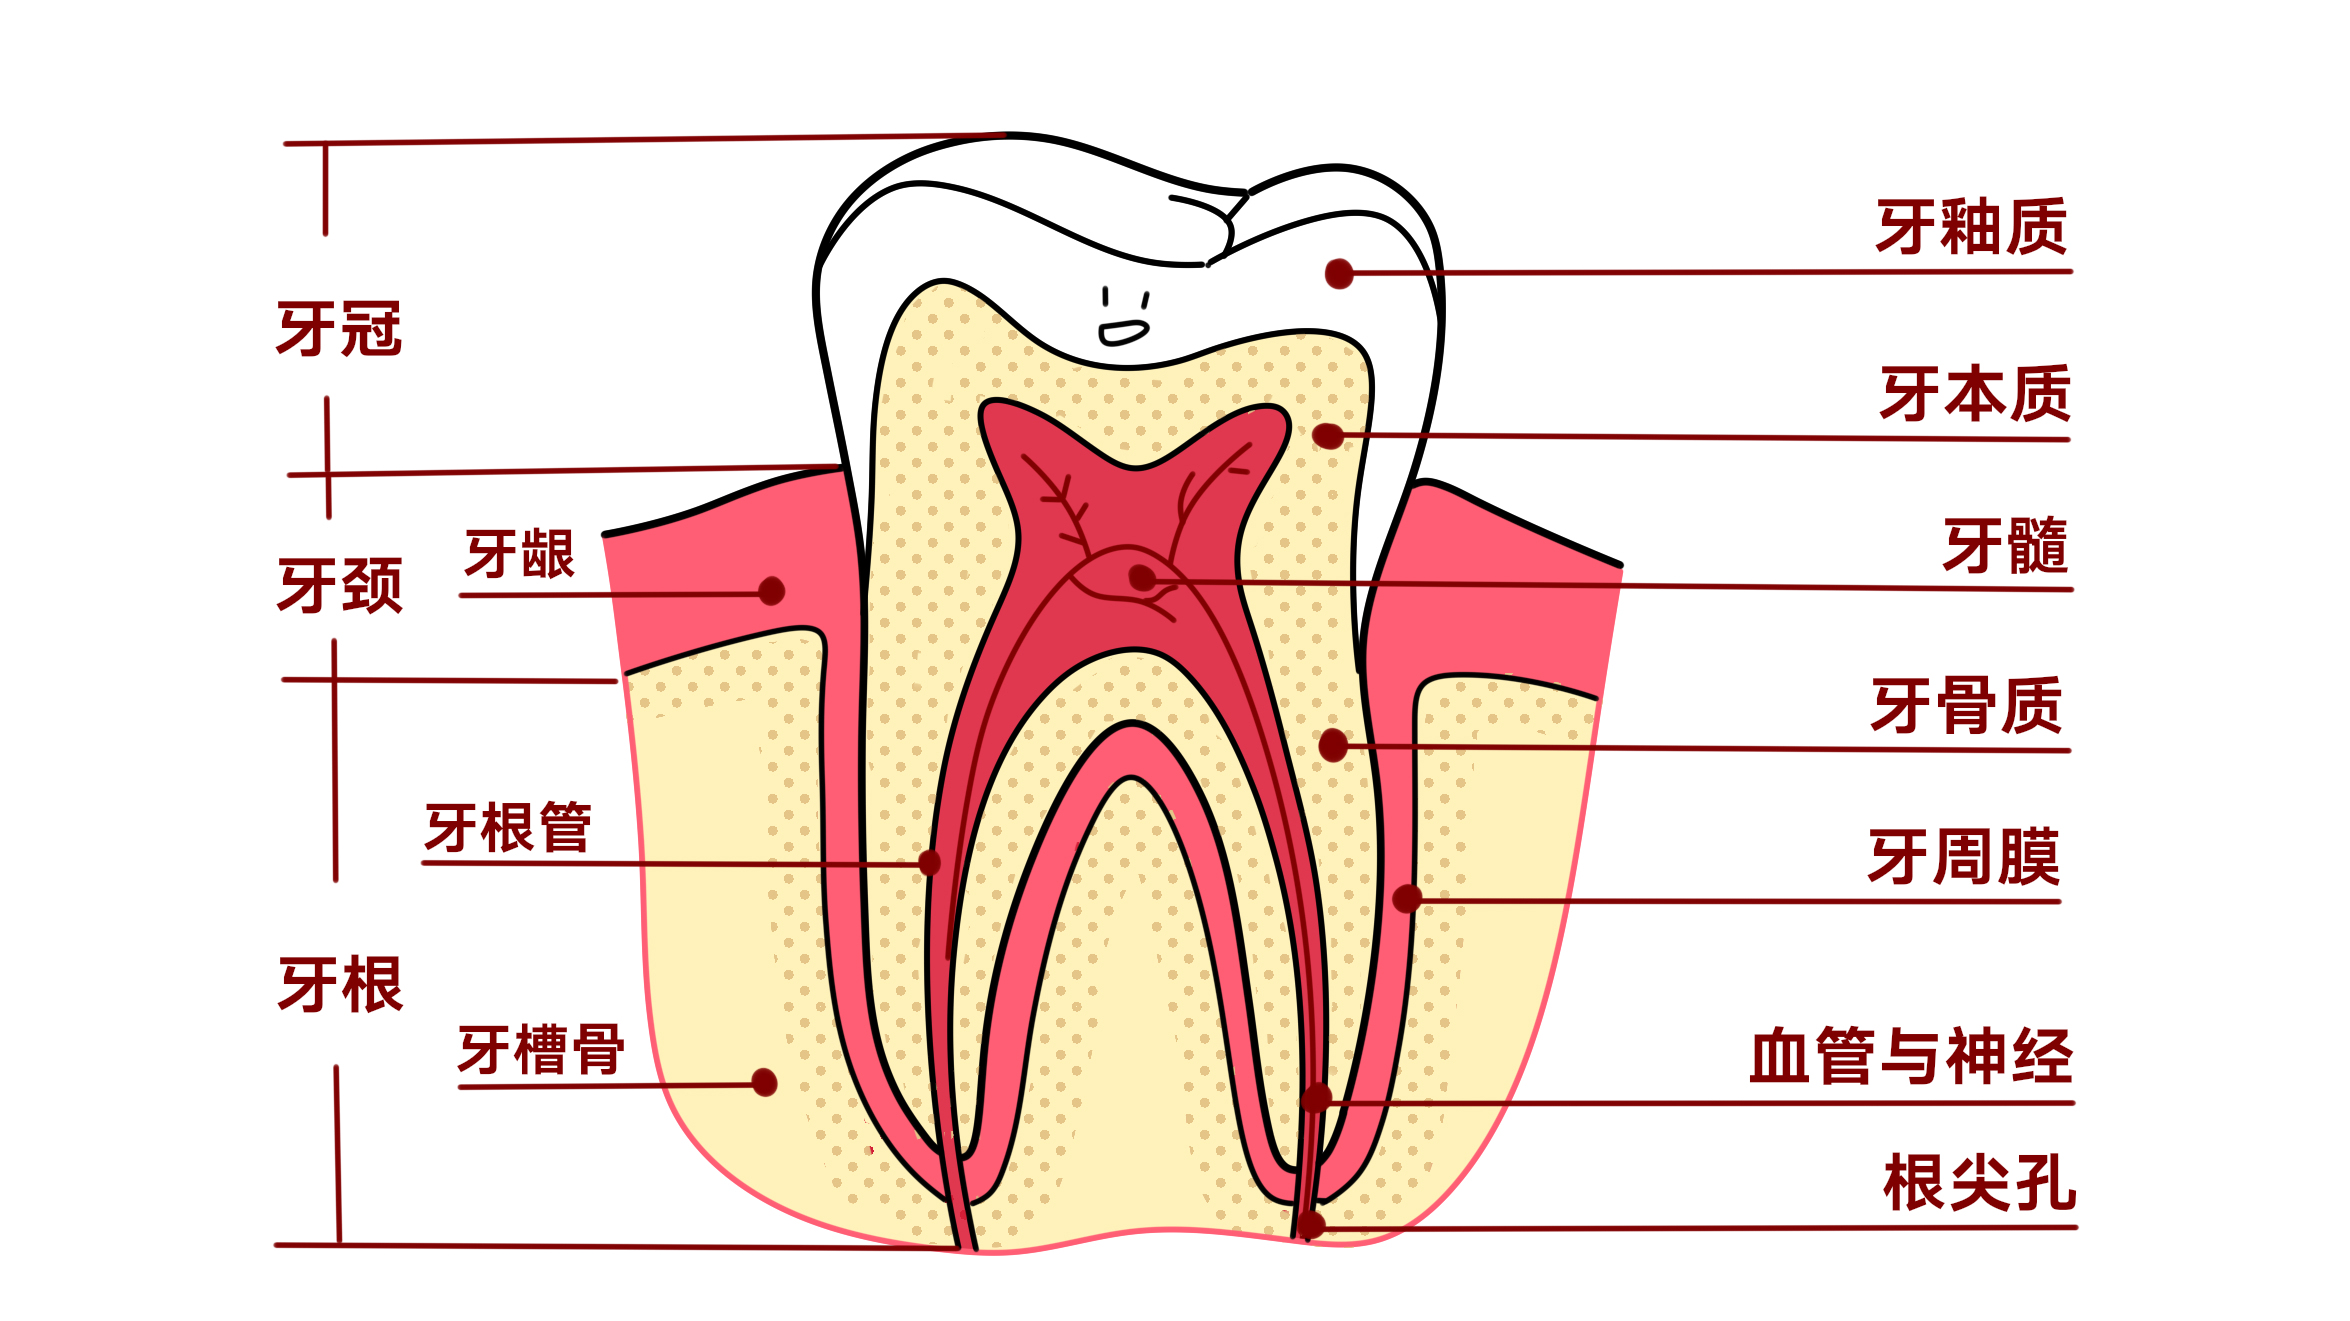 人的牙齿名称结构图图片